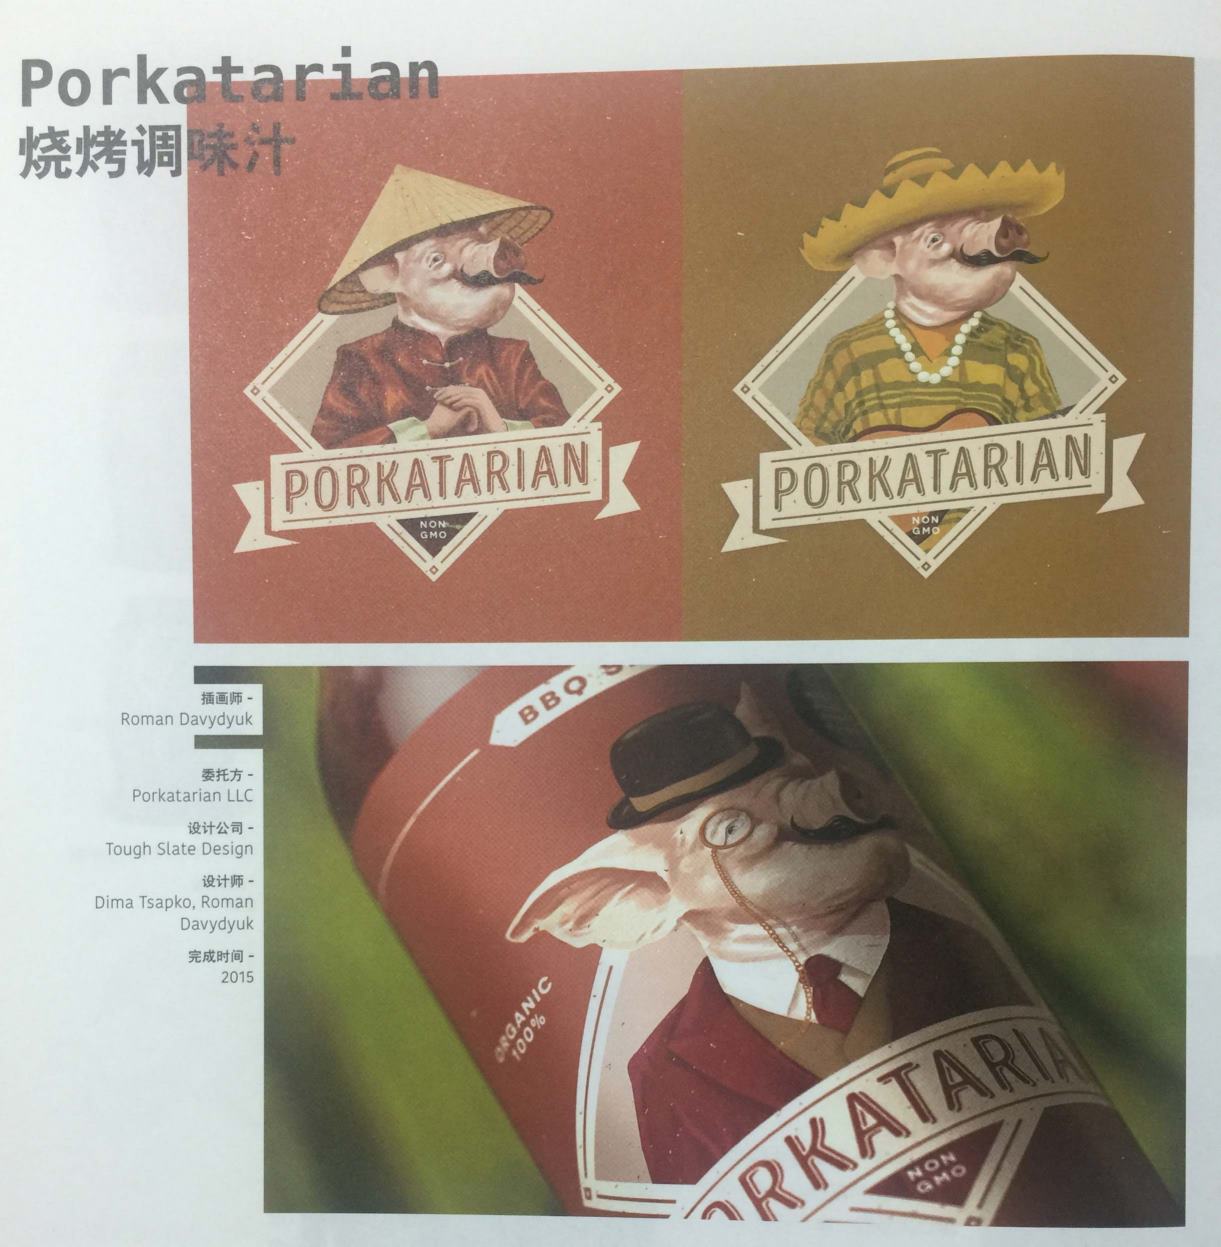 吸引顾客注意的猪肉烧烤调味汁包装设计